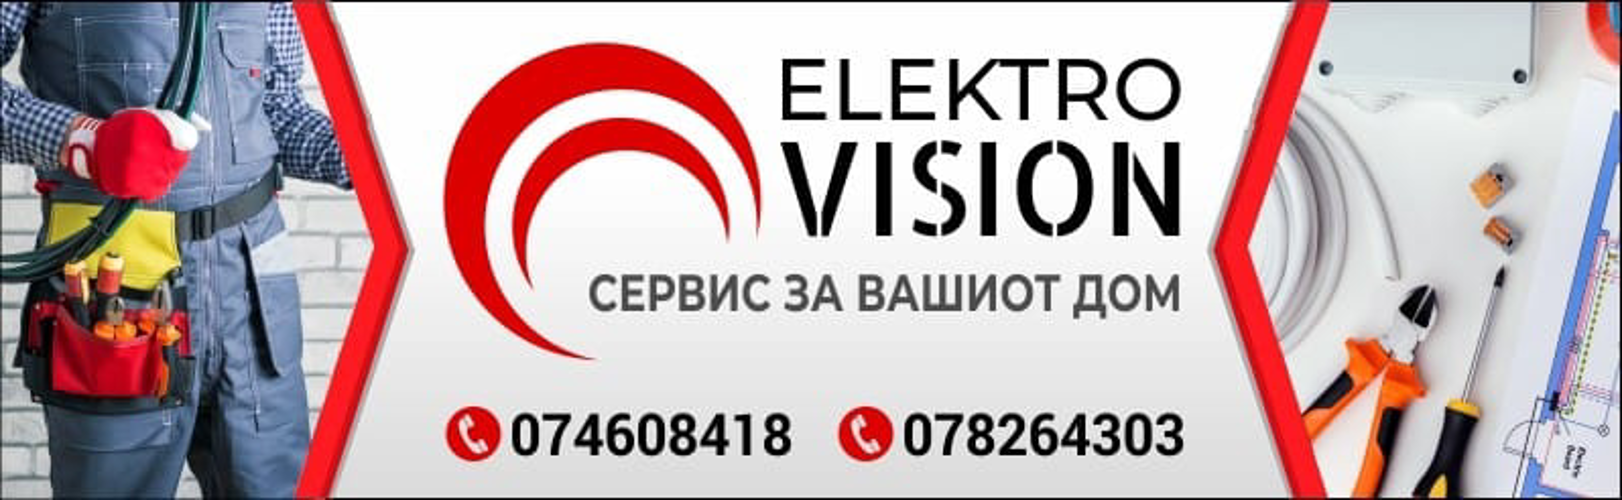 Elektro Vision